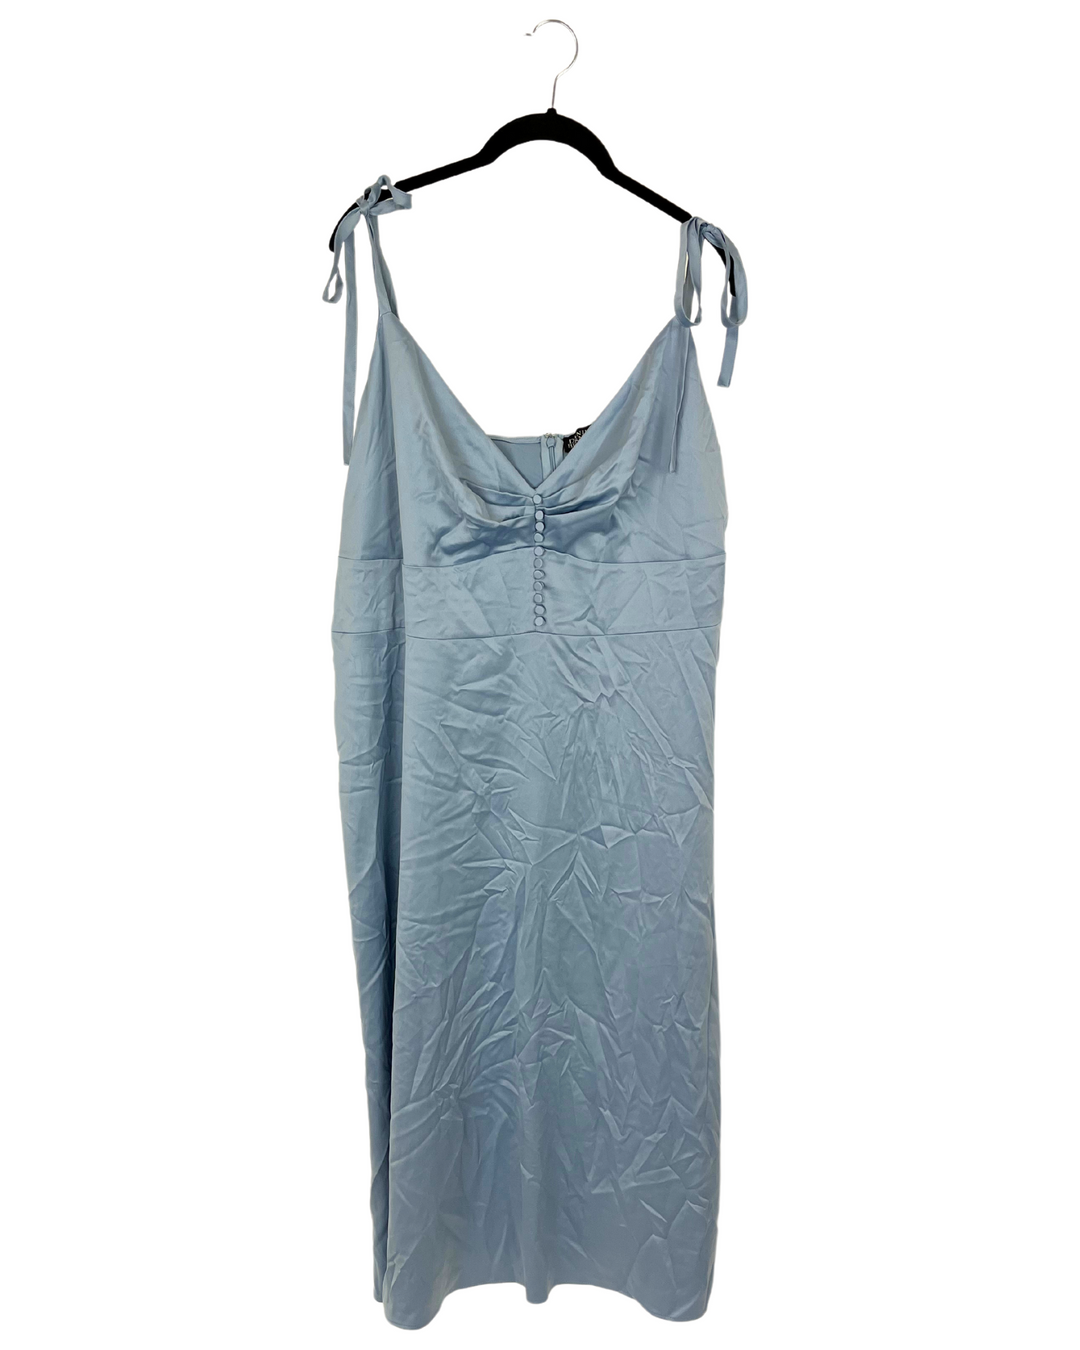 Pale Blue Midi Slip Dress - Size 18W and 20W